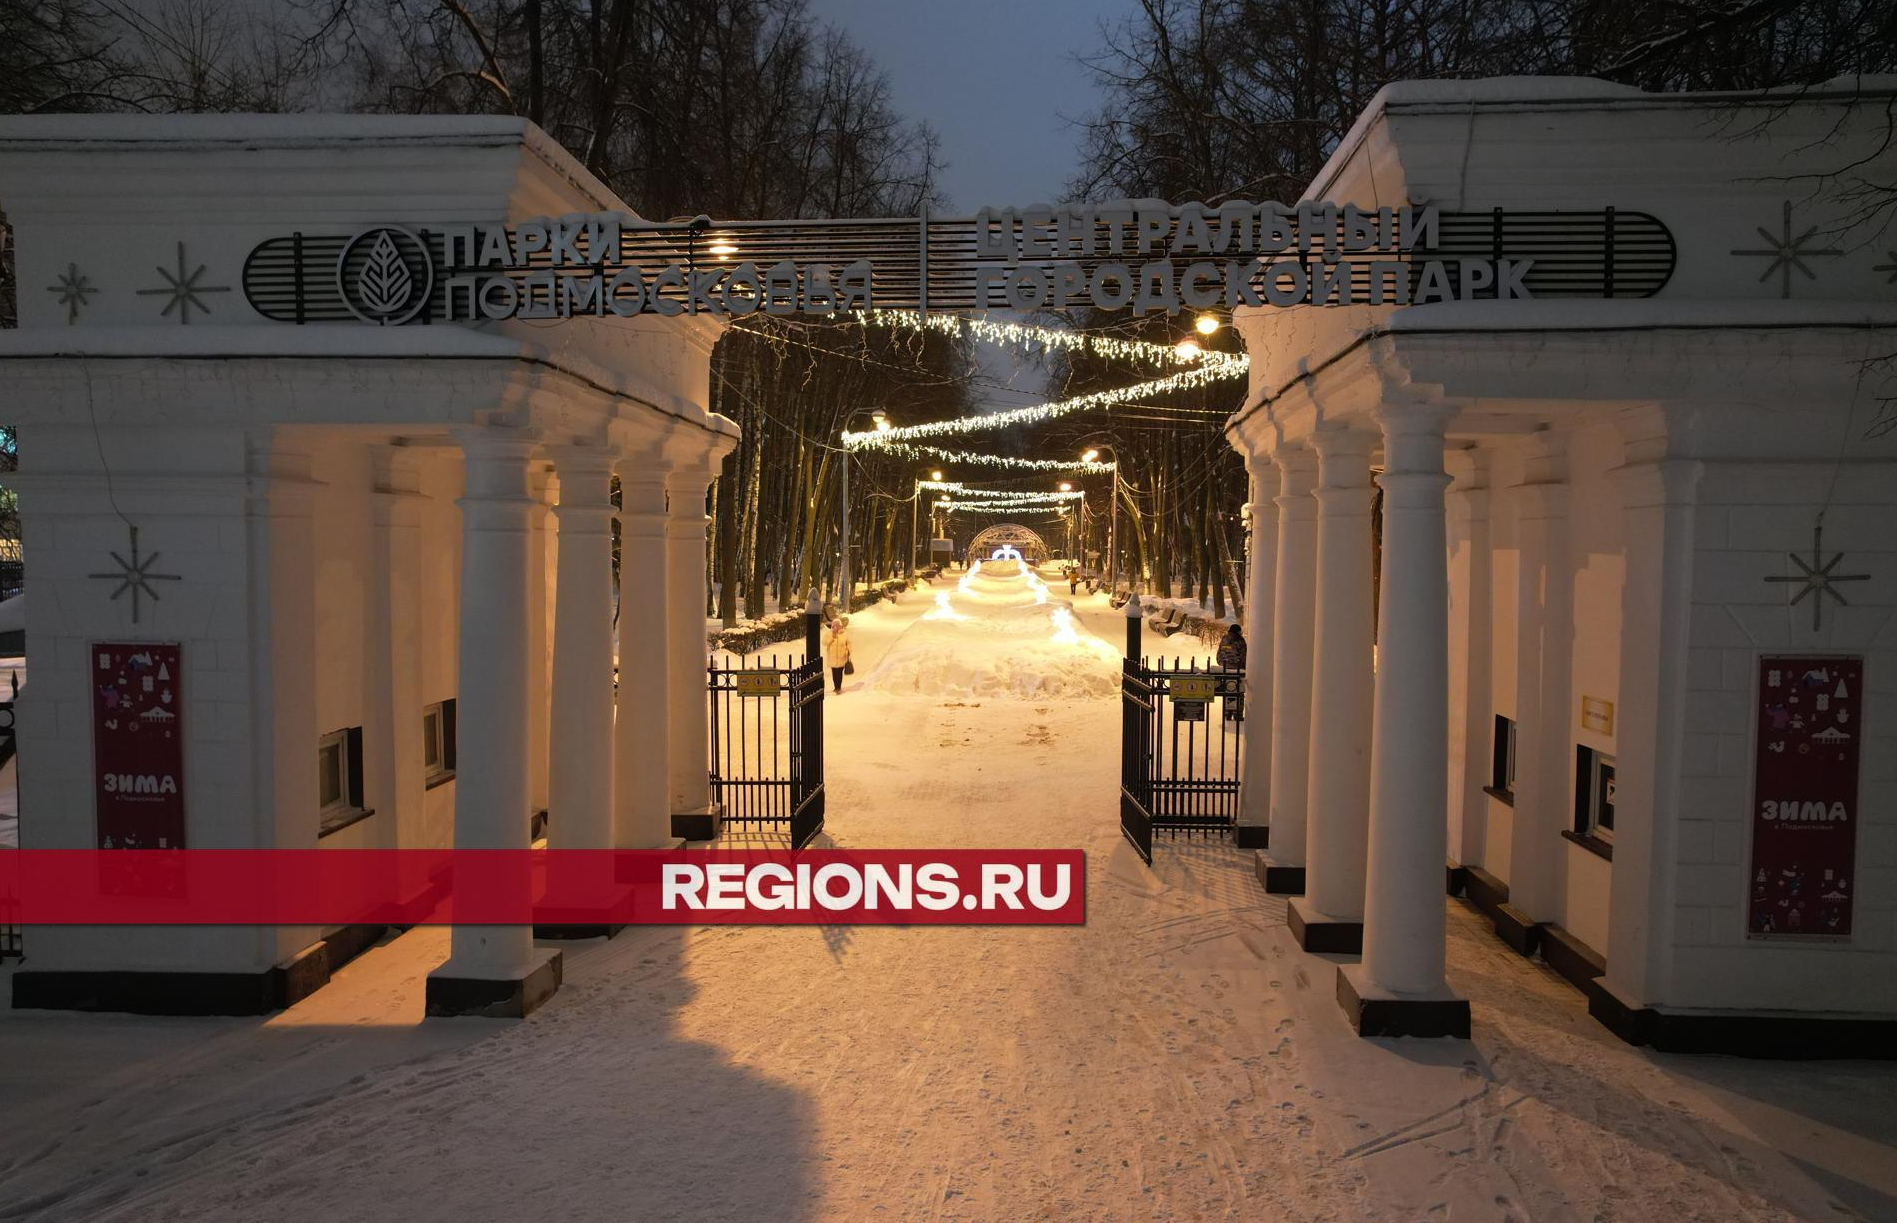 Центральный парк Королева празднично осветили по просьбам жителей